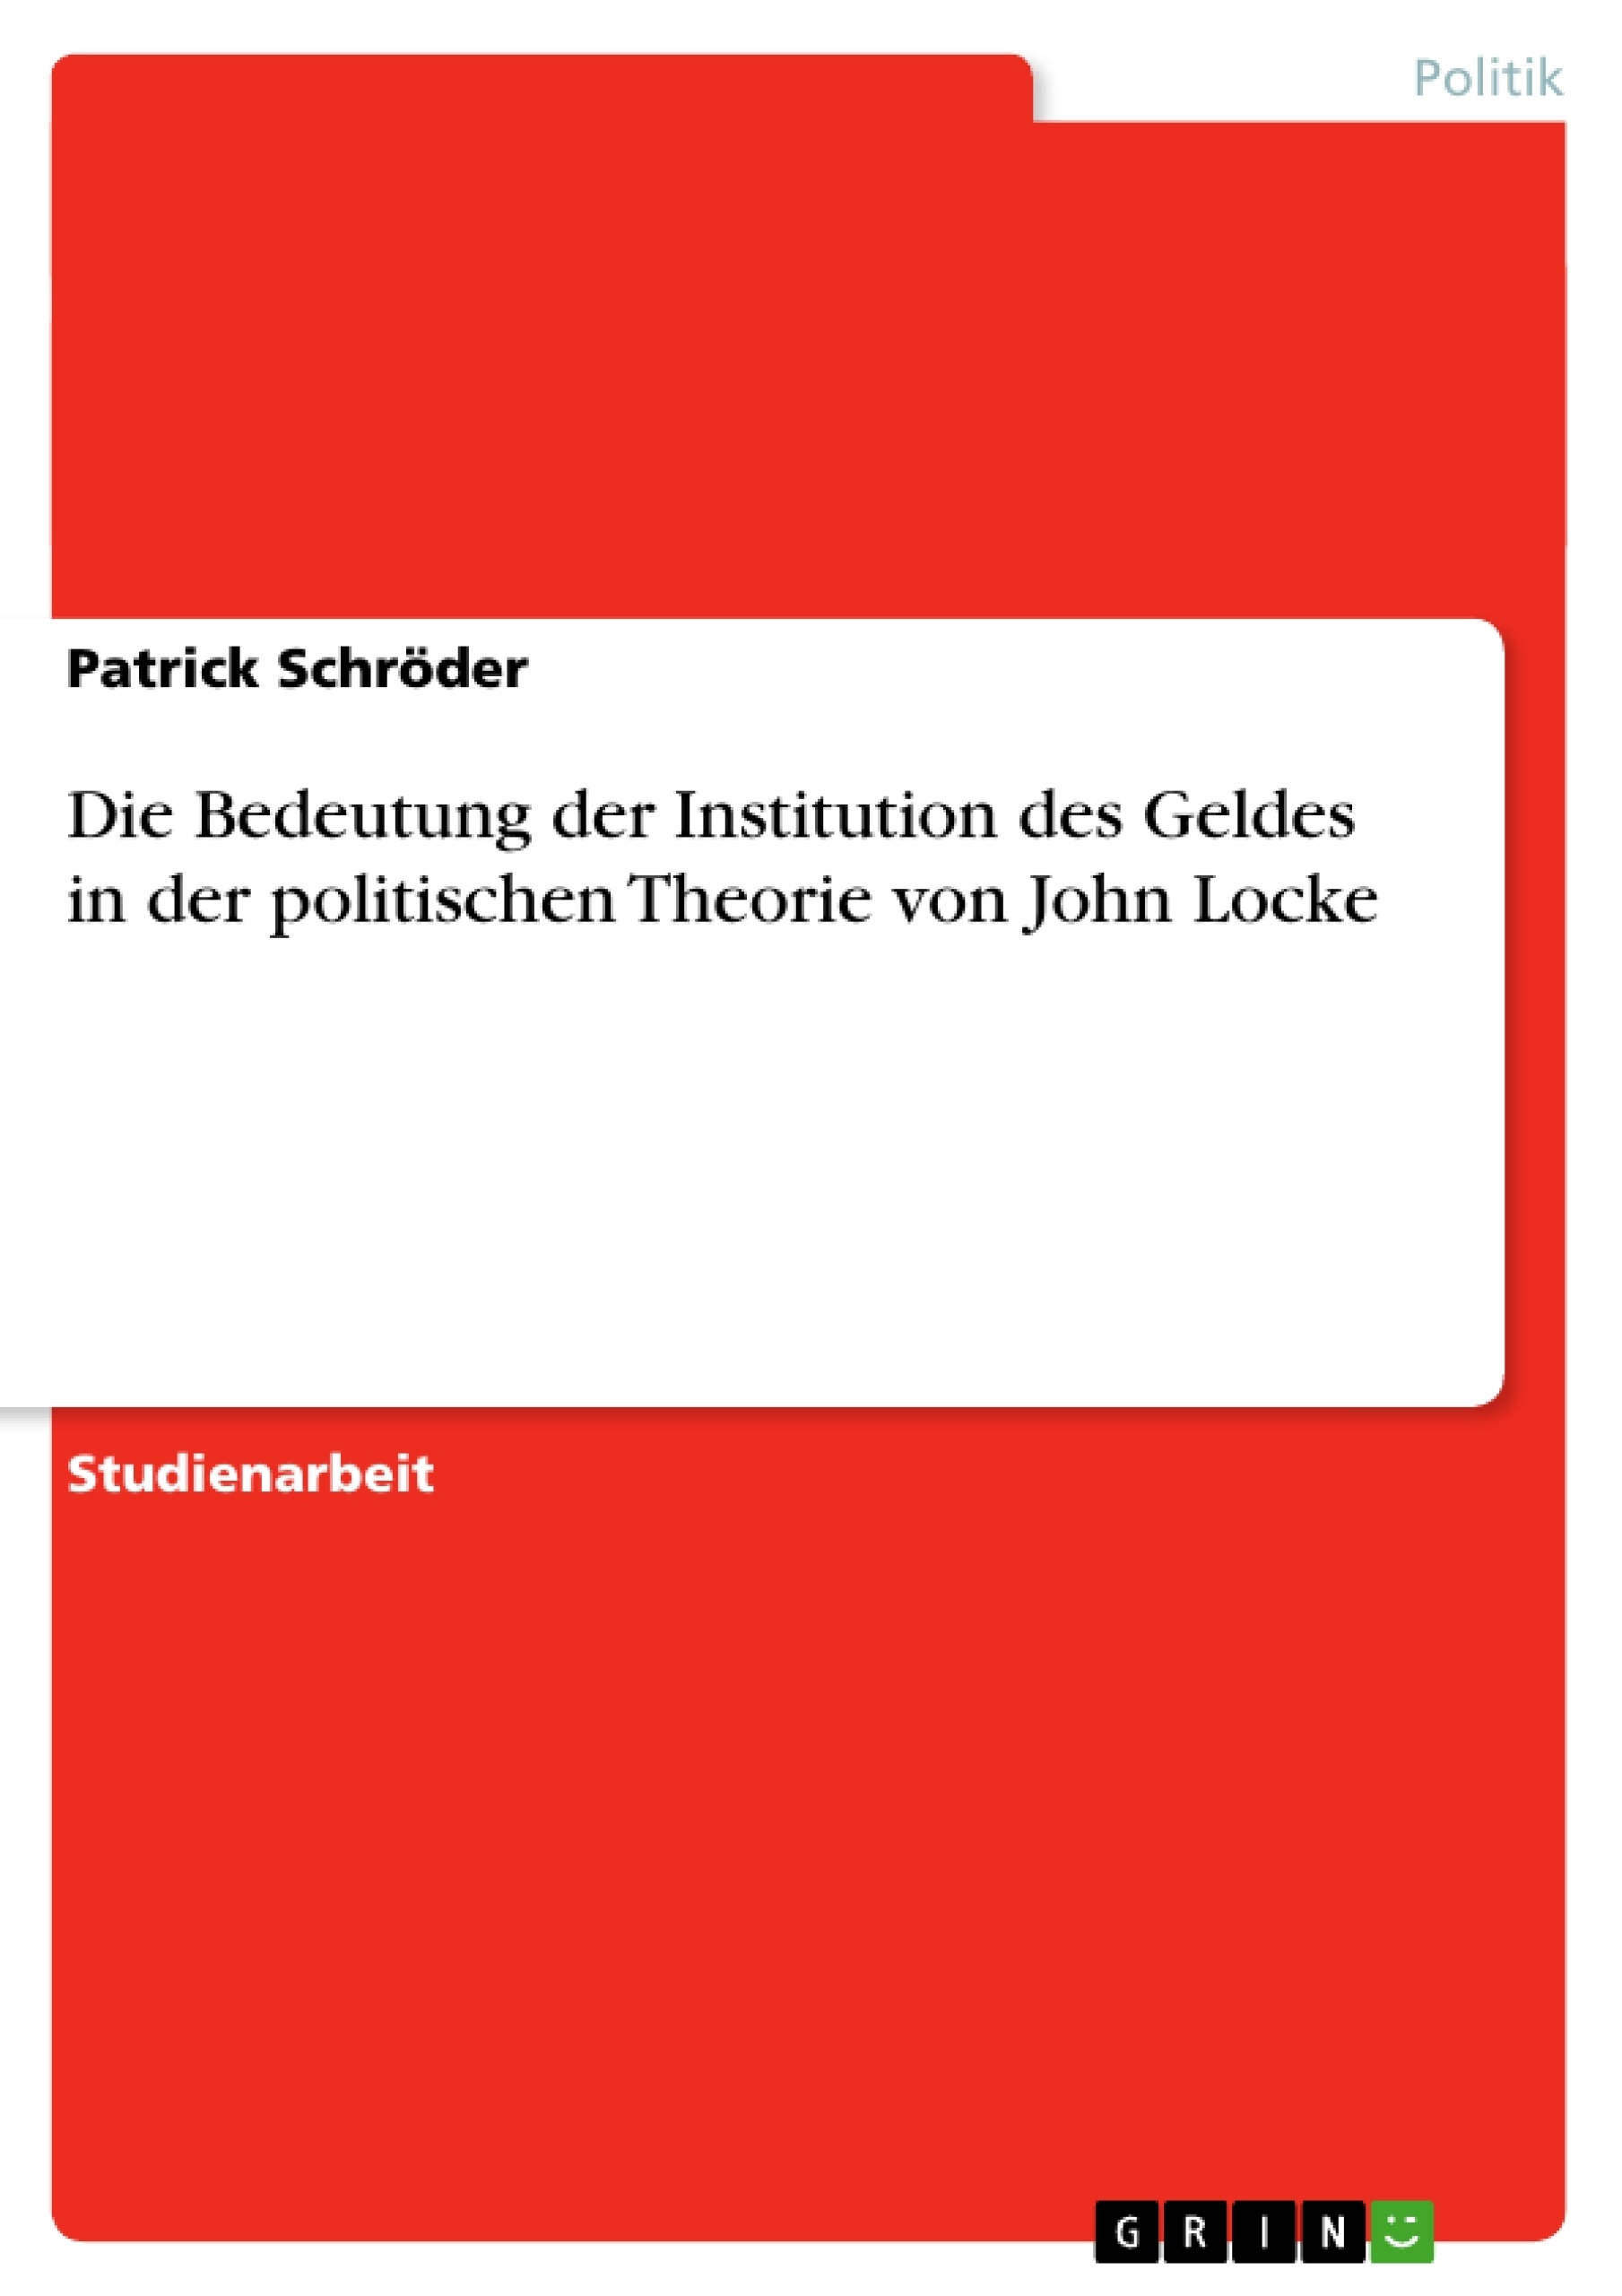 Title: Die Bedeutung der Institution des Geldes in der politischen Theorie von John Locke